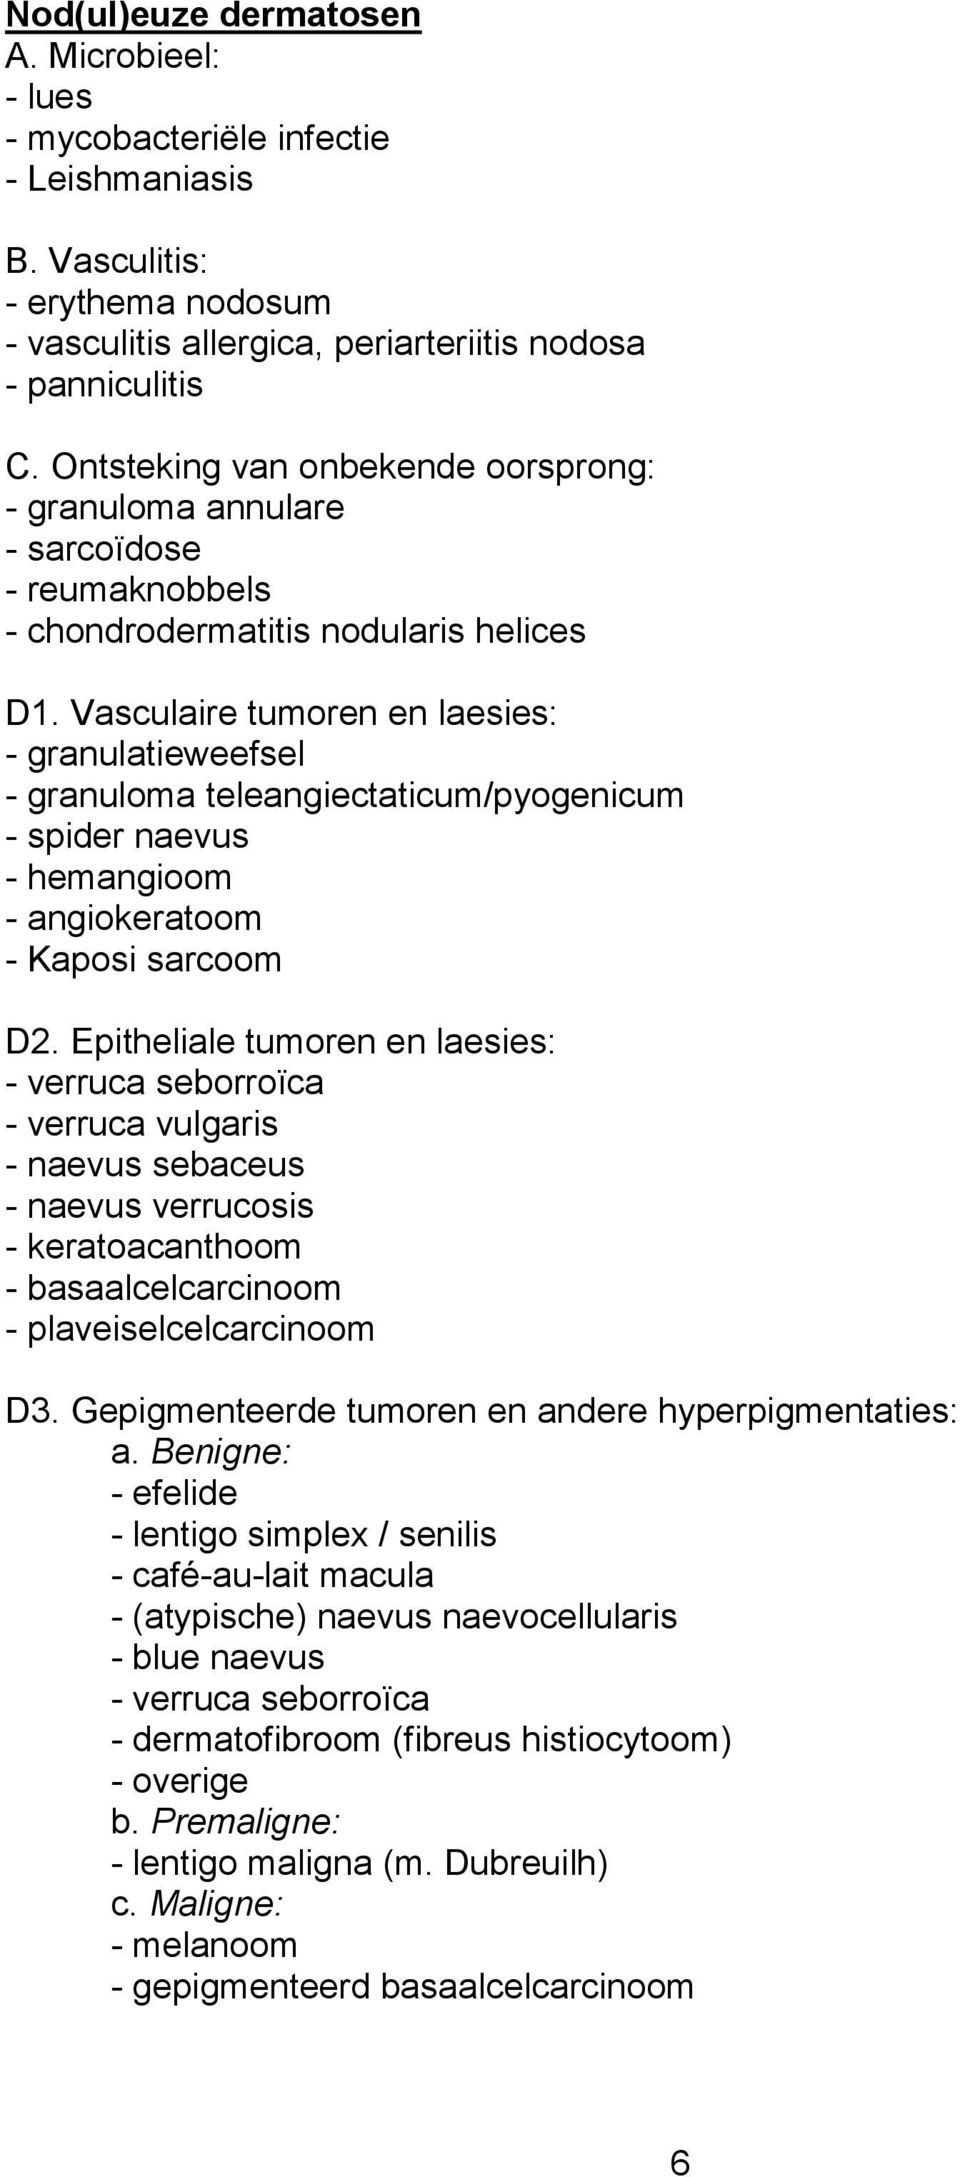 Vasculaire tumoren en laesies: - granulatieweefsel - granuloma teleangiectaticum/pyogenicum - spider naevus - hemangioom - angiokeratoom - Kaposi sarcoom D2.